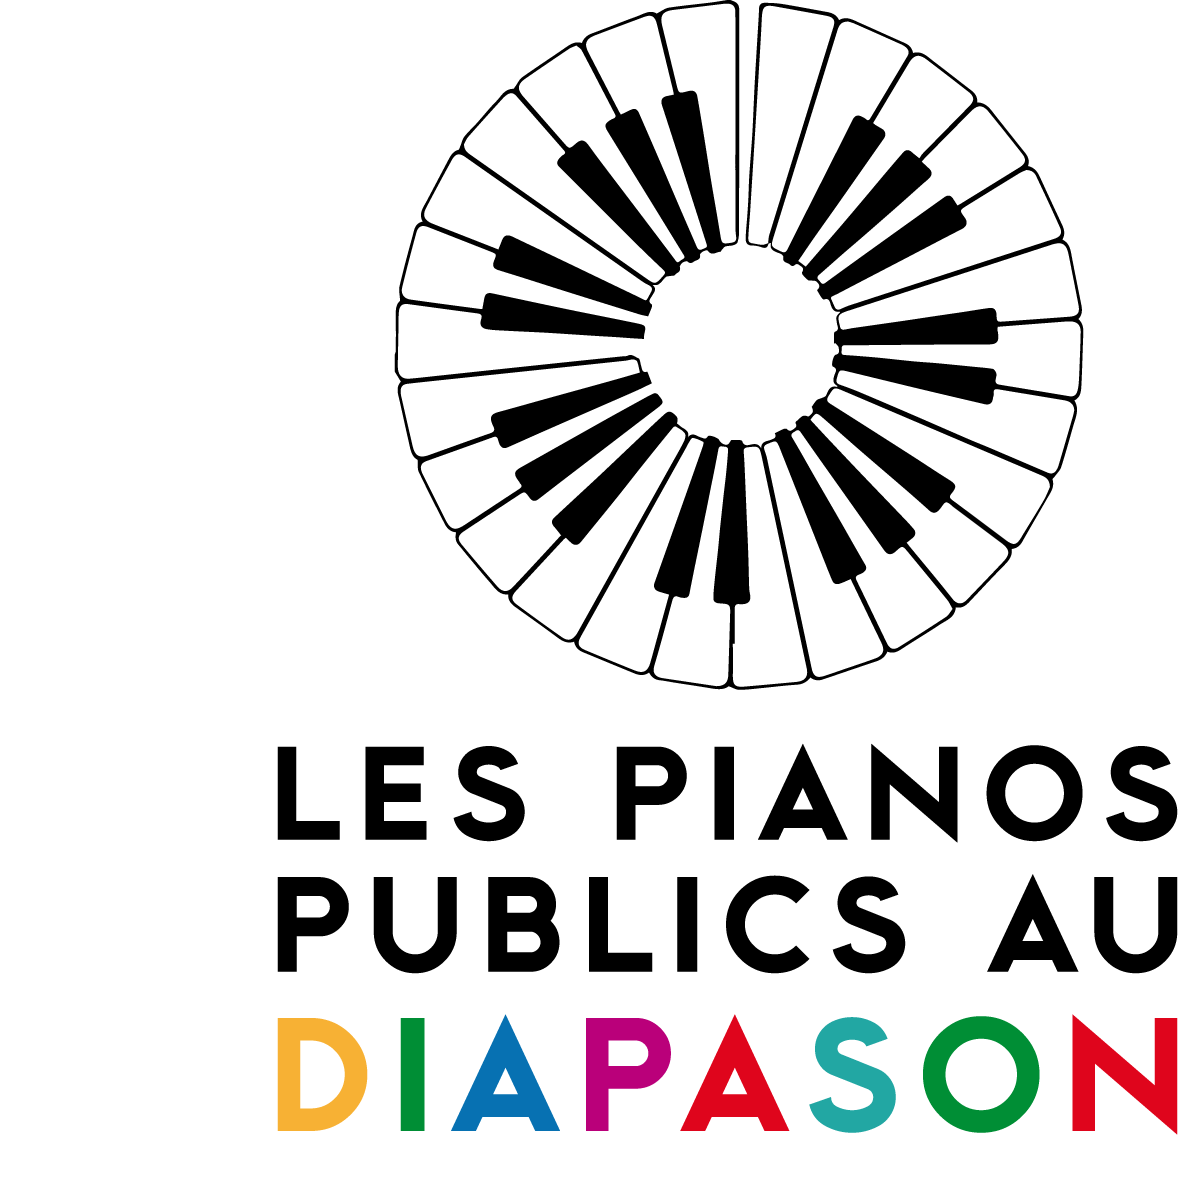 PIANOS PUBLICS AU DIAPASON